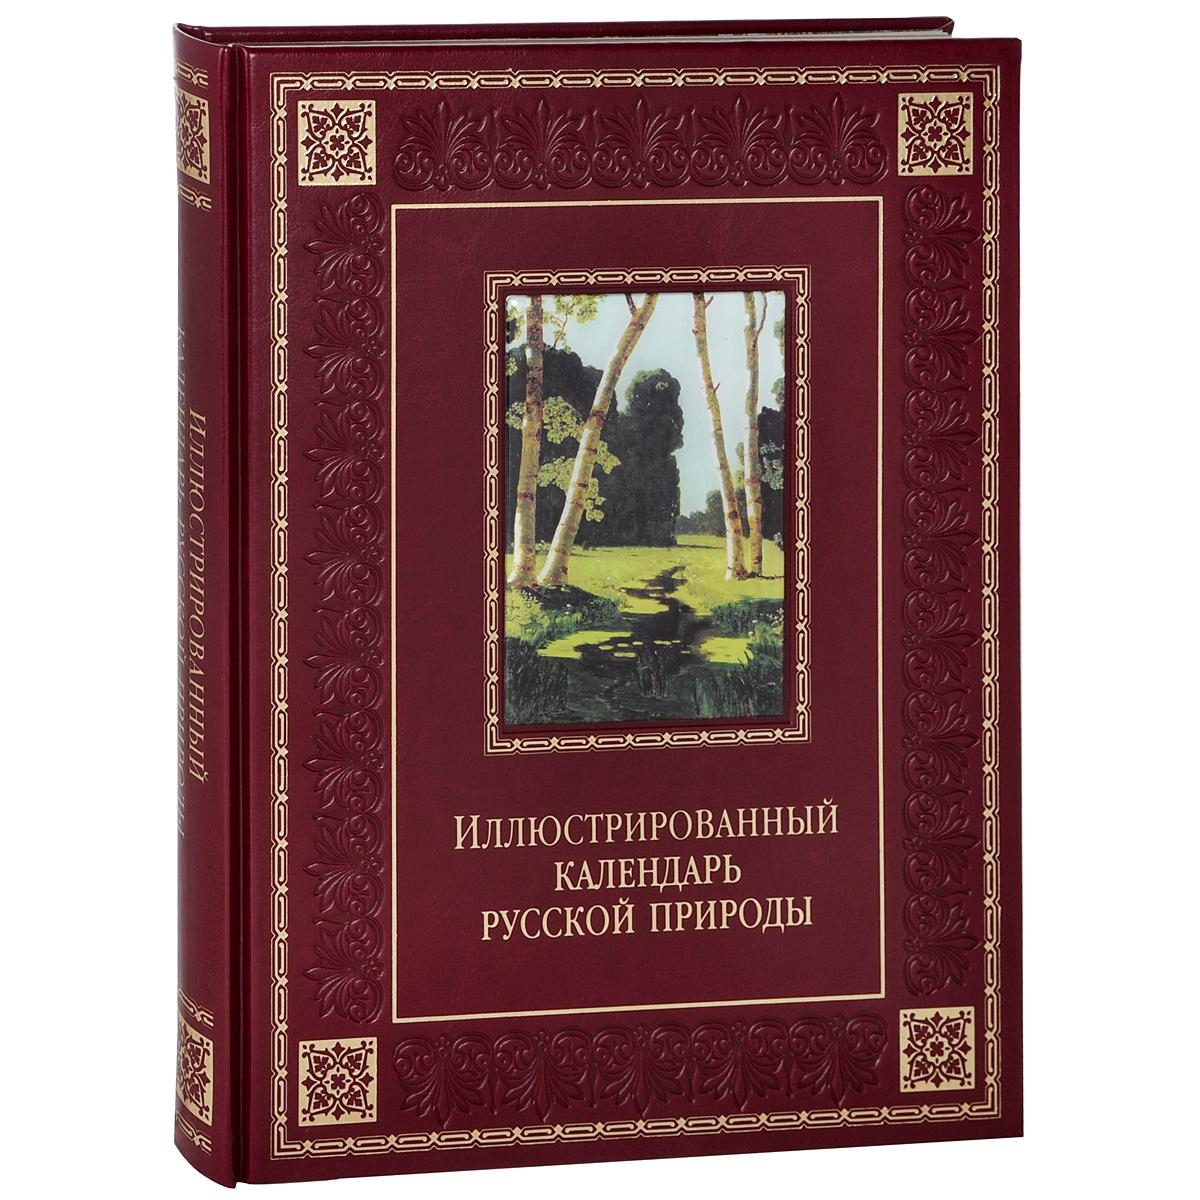 Иллюстрированный календарь русской природы (подарочное издание). В. П. Бутромеев